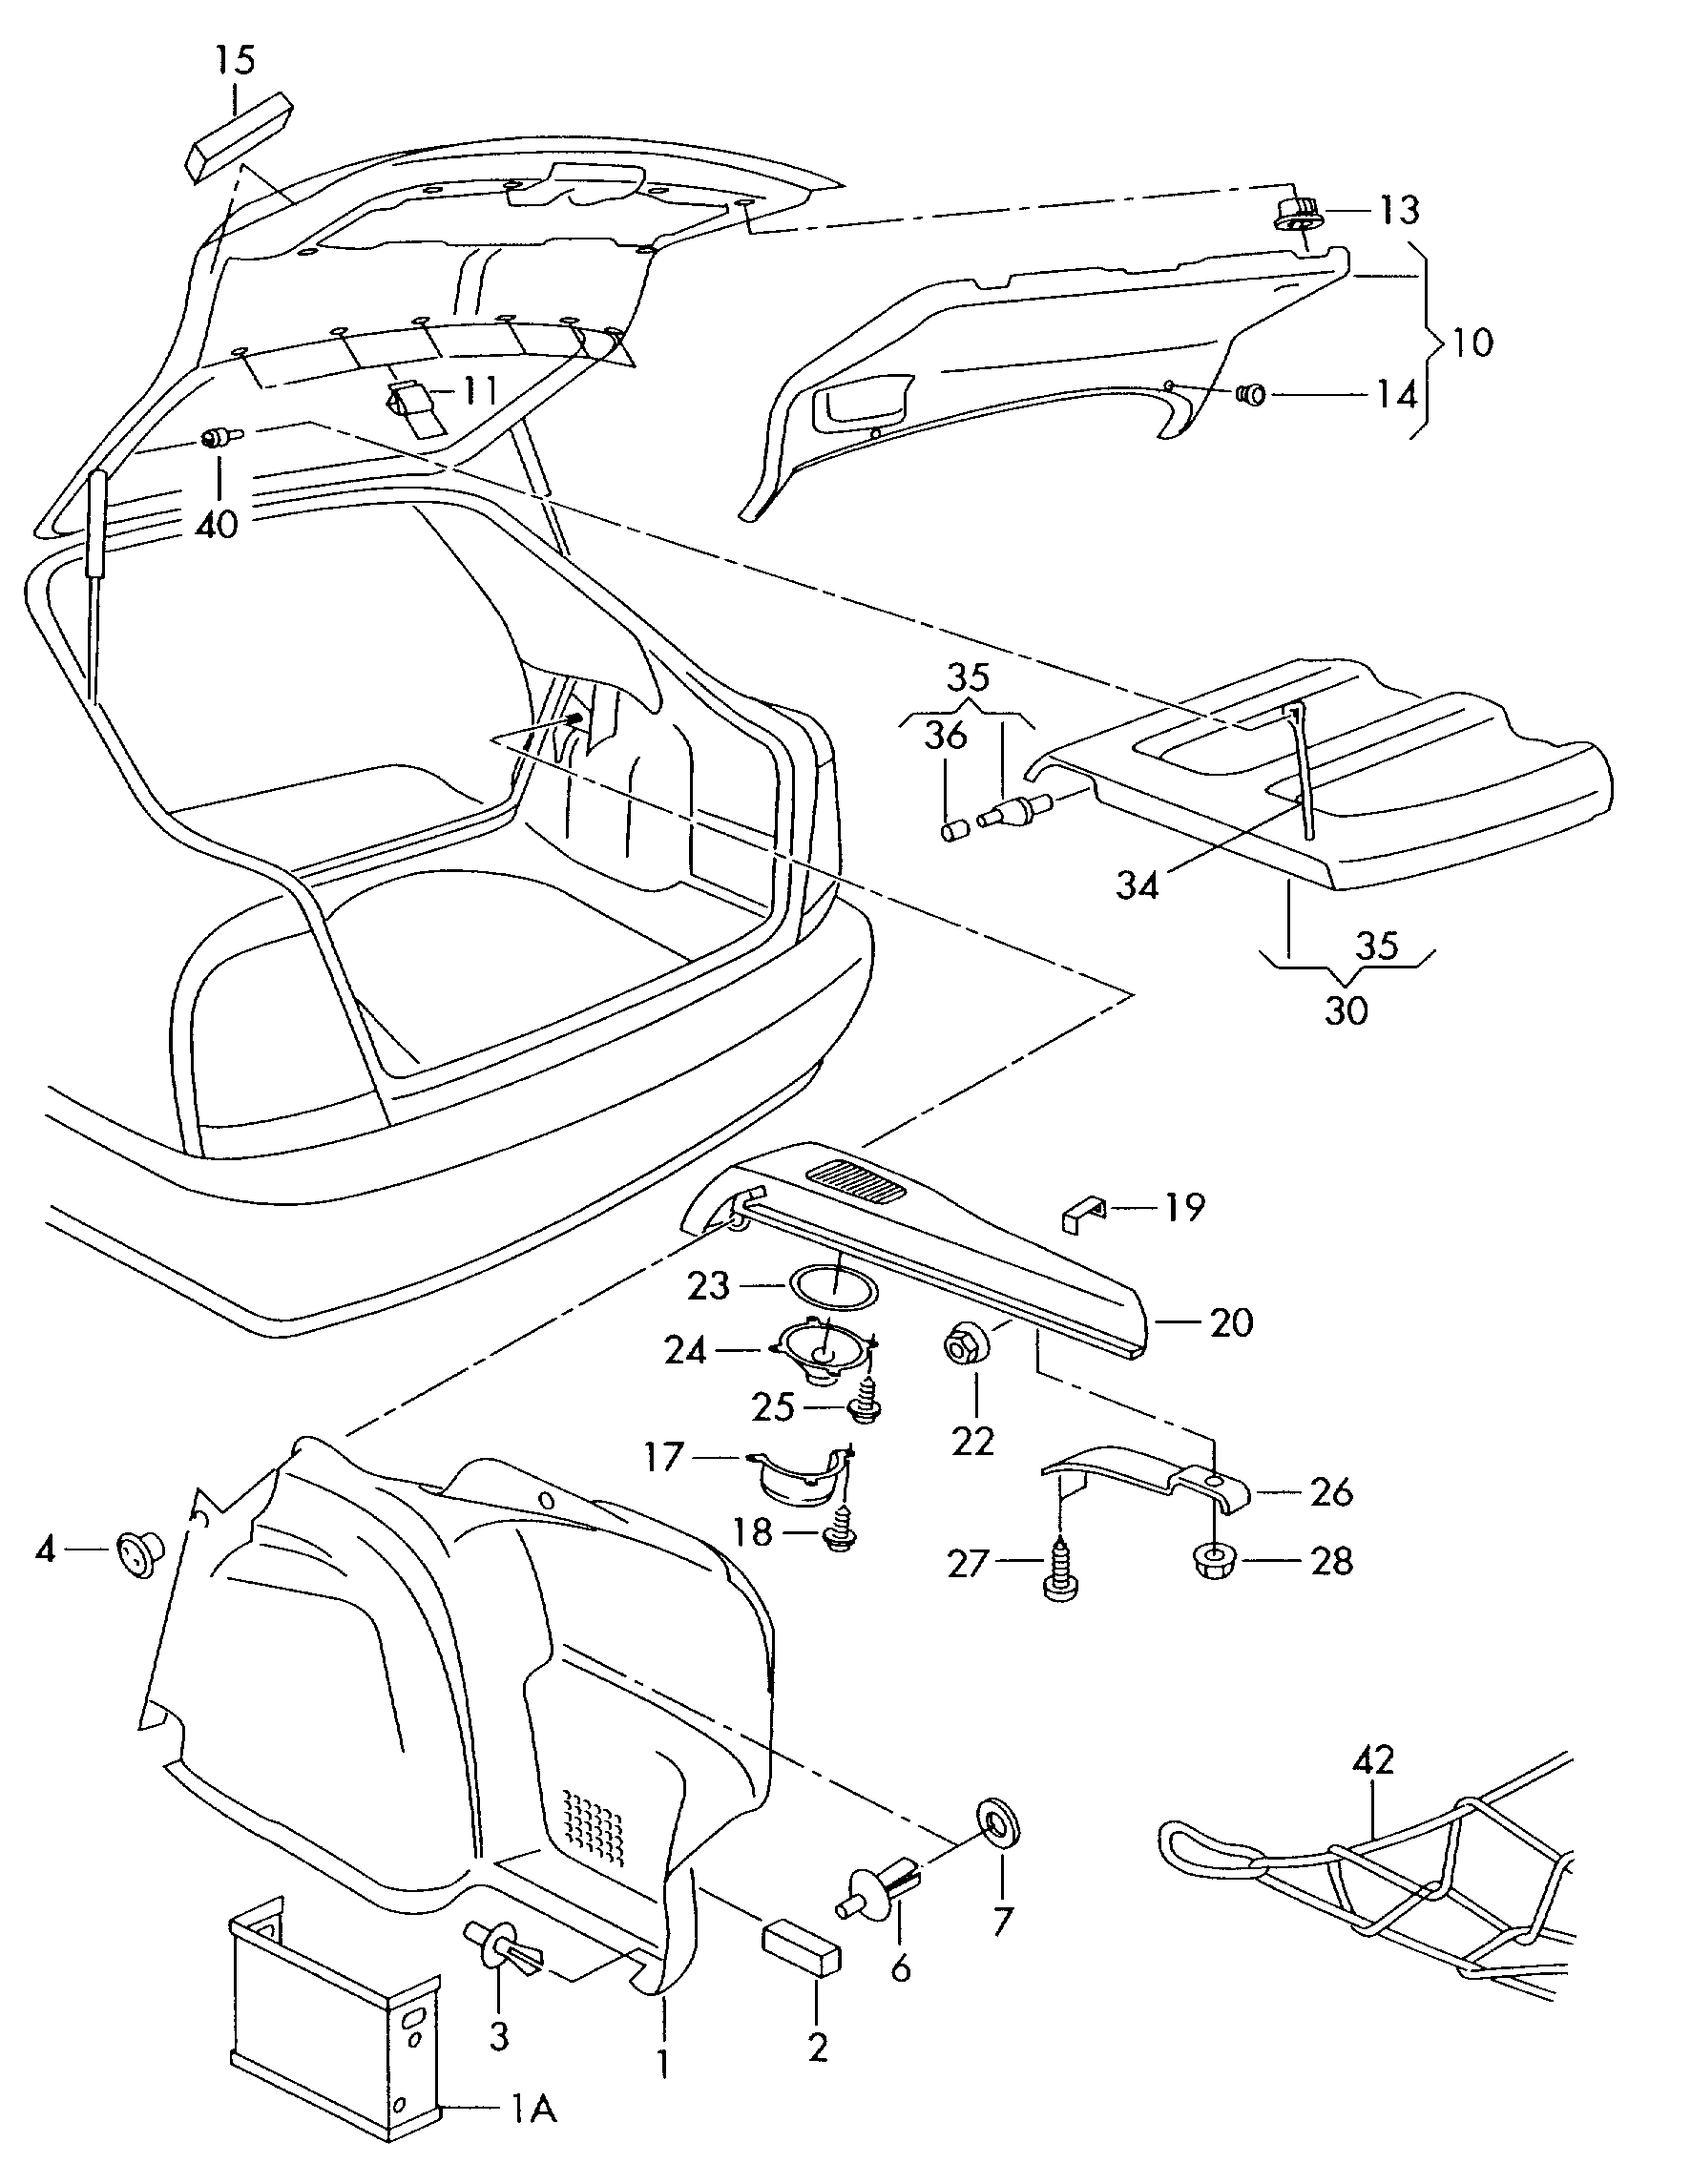 Revestimiento del maleteroCubierta de la zona de cargaguarnecido de porton posterior lateral - Octavia - oct